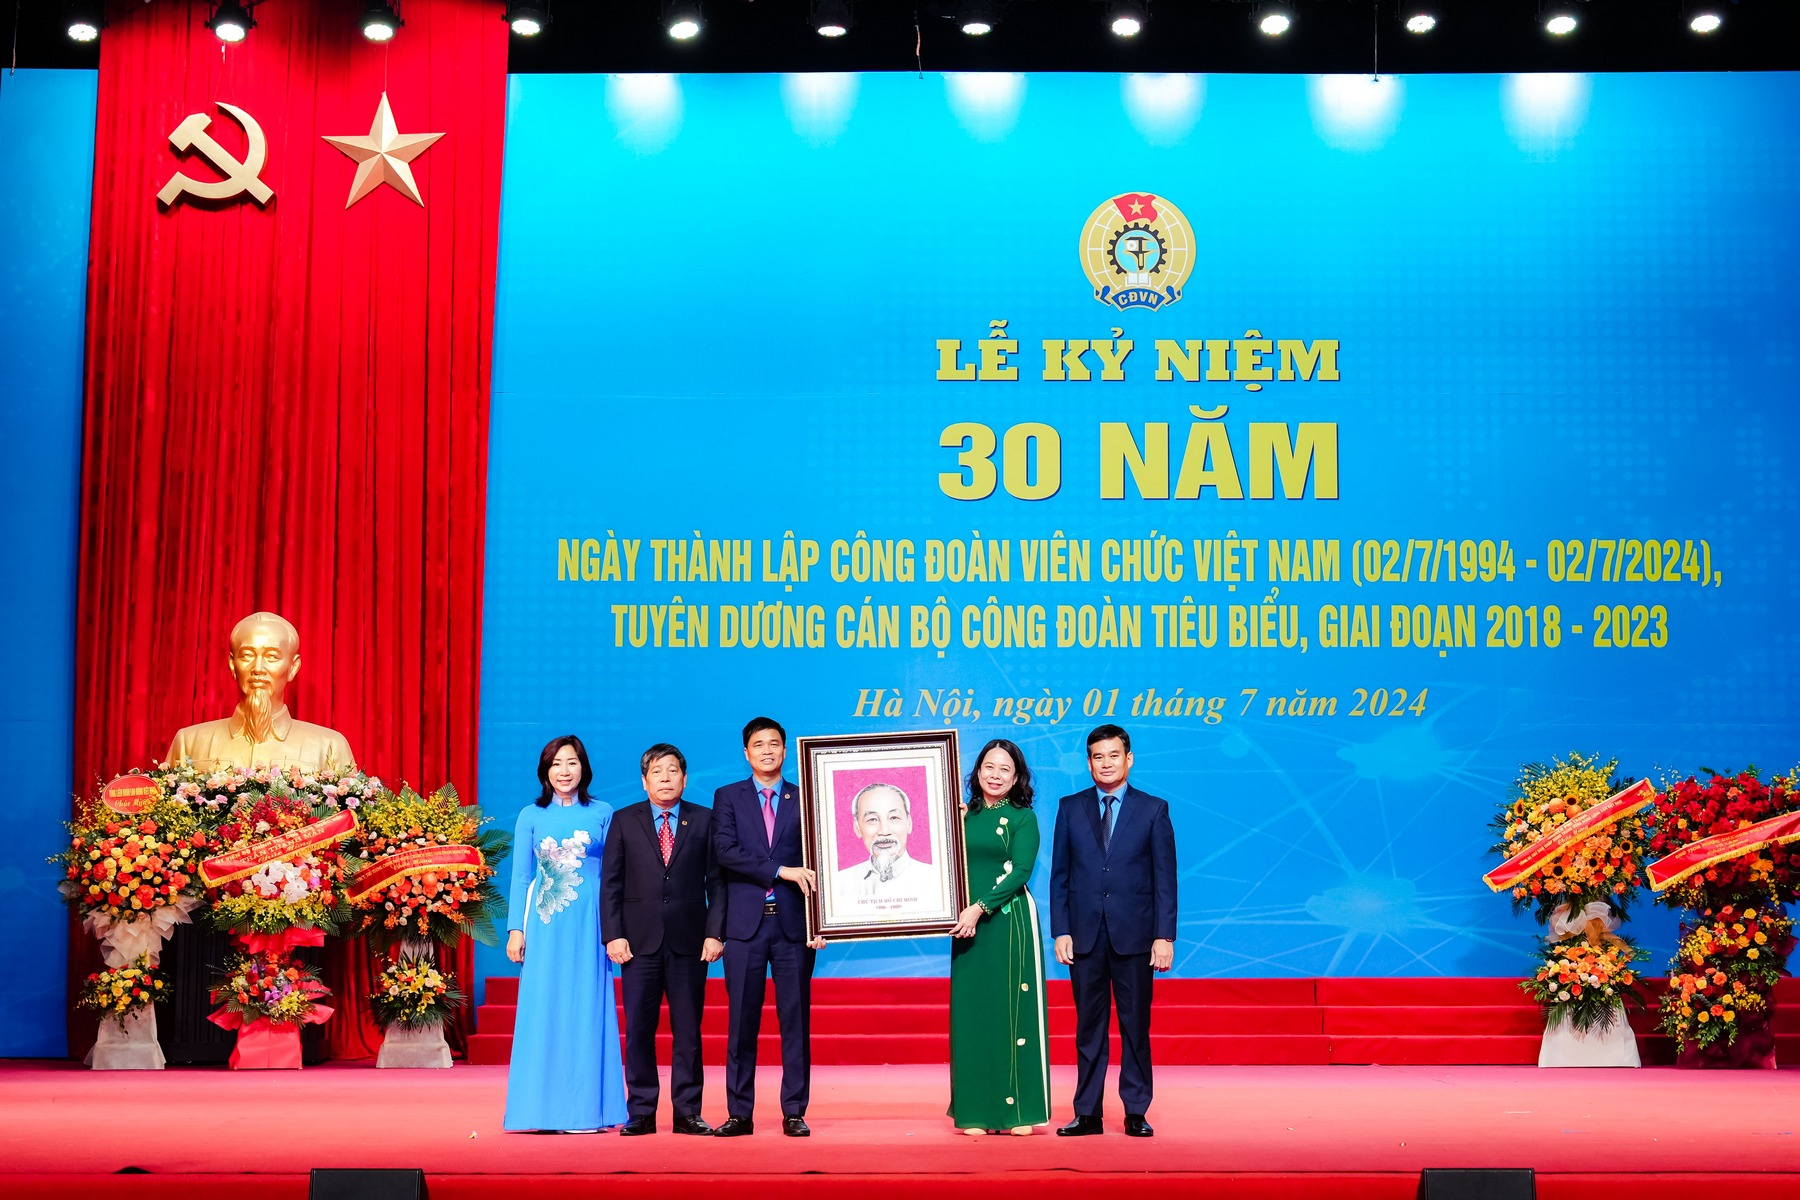 Ảnh: Lễ kỷ niệm 30 năm Ngày thành lập Công đoàn Viên chức Việt Nam, tuyên dương cán bộ công đoàn tiêu biểu giai đoạn 2018 - 2023